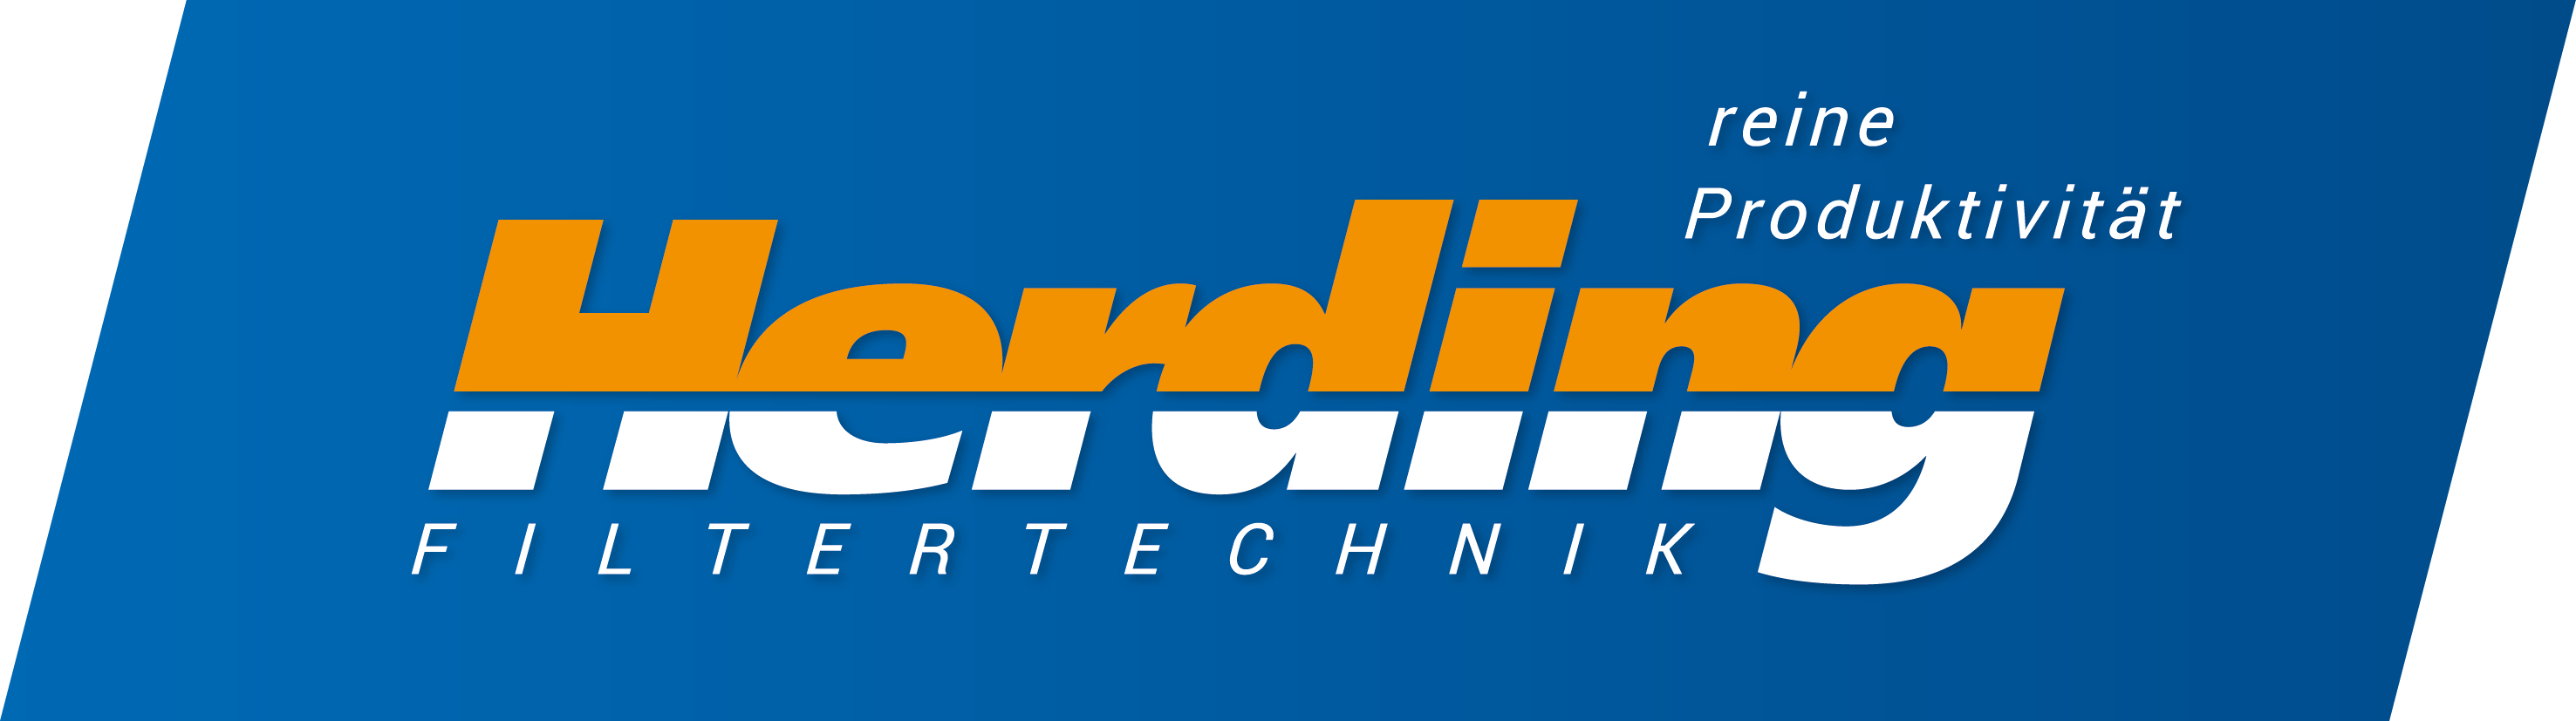 Herding GmbH Filtertechnik Logo